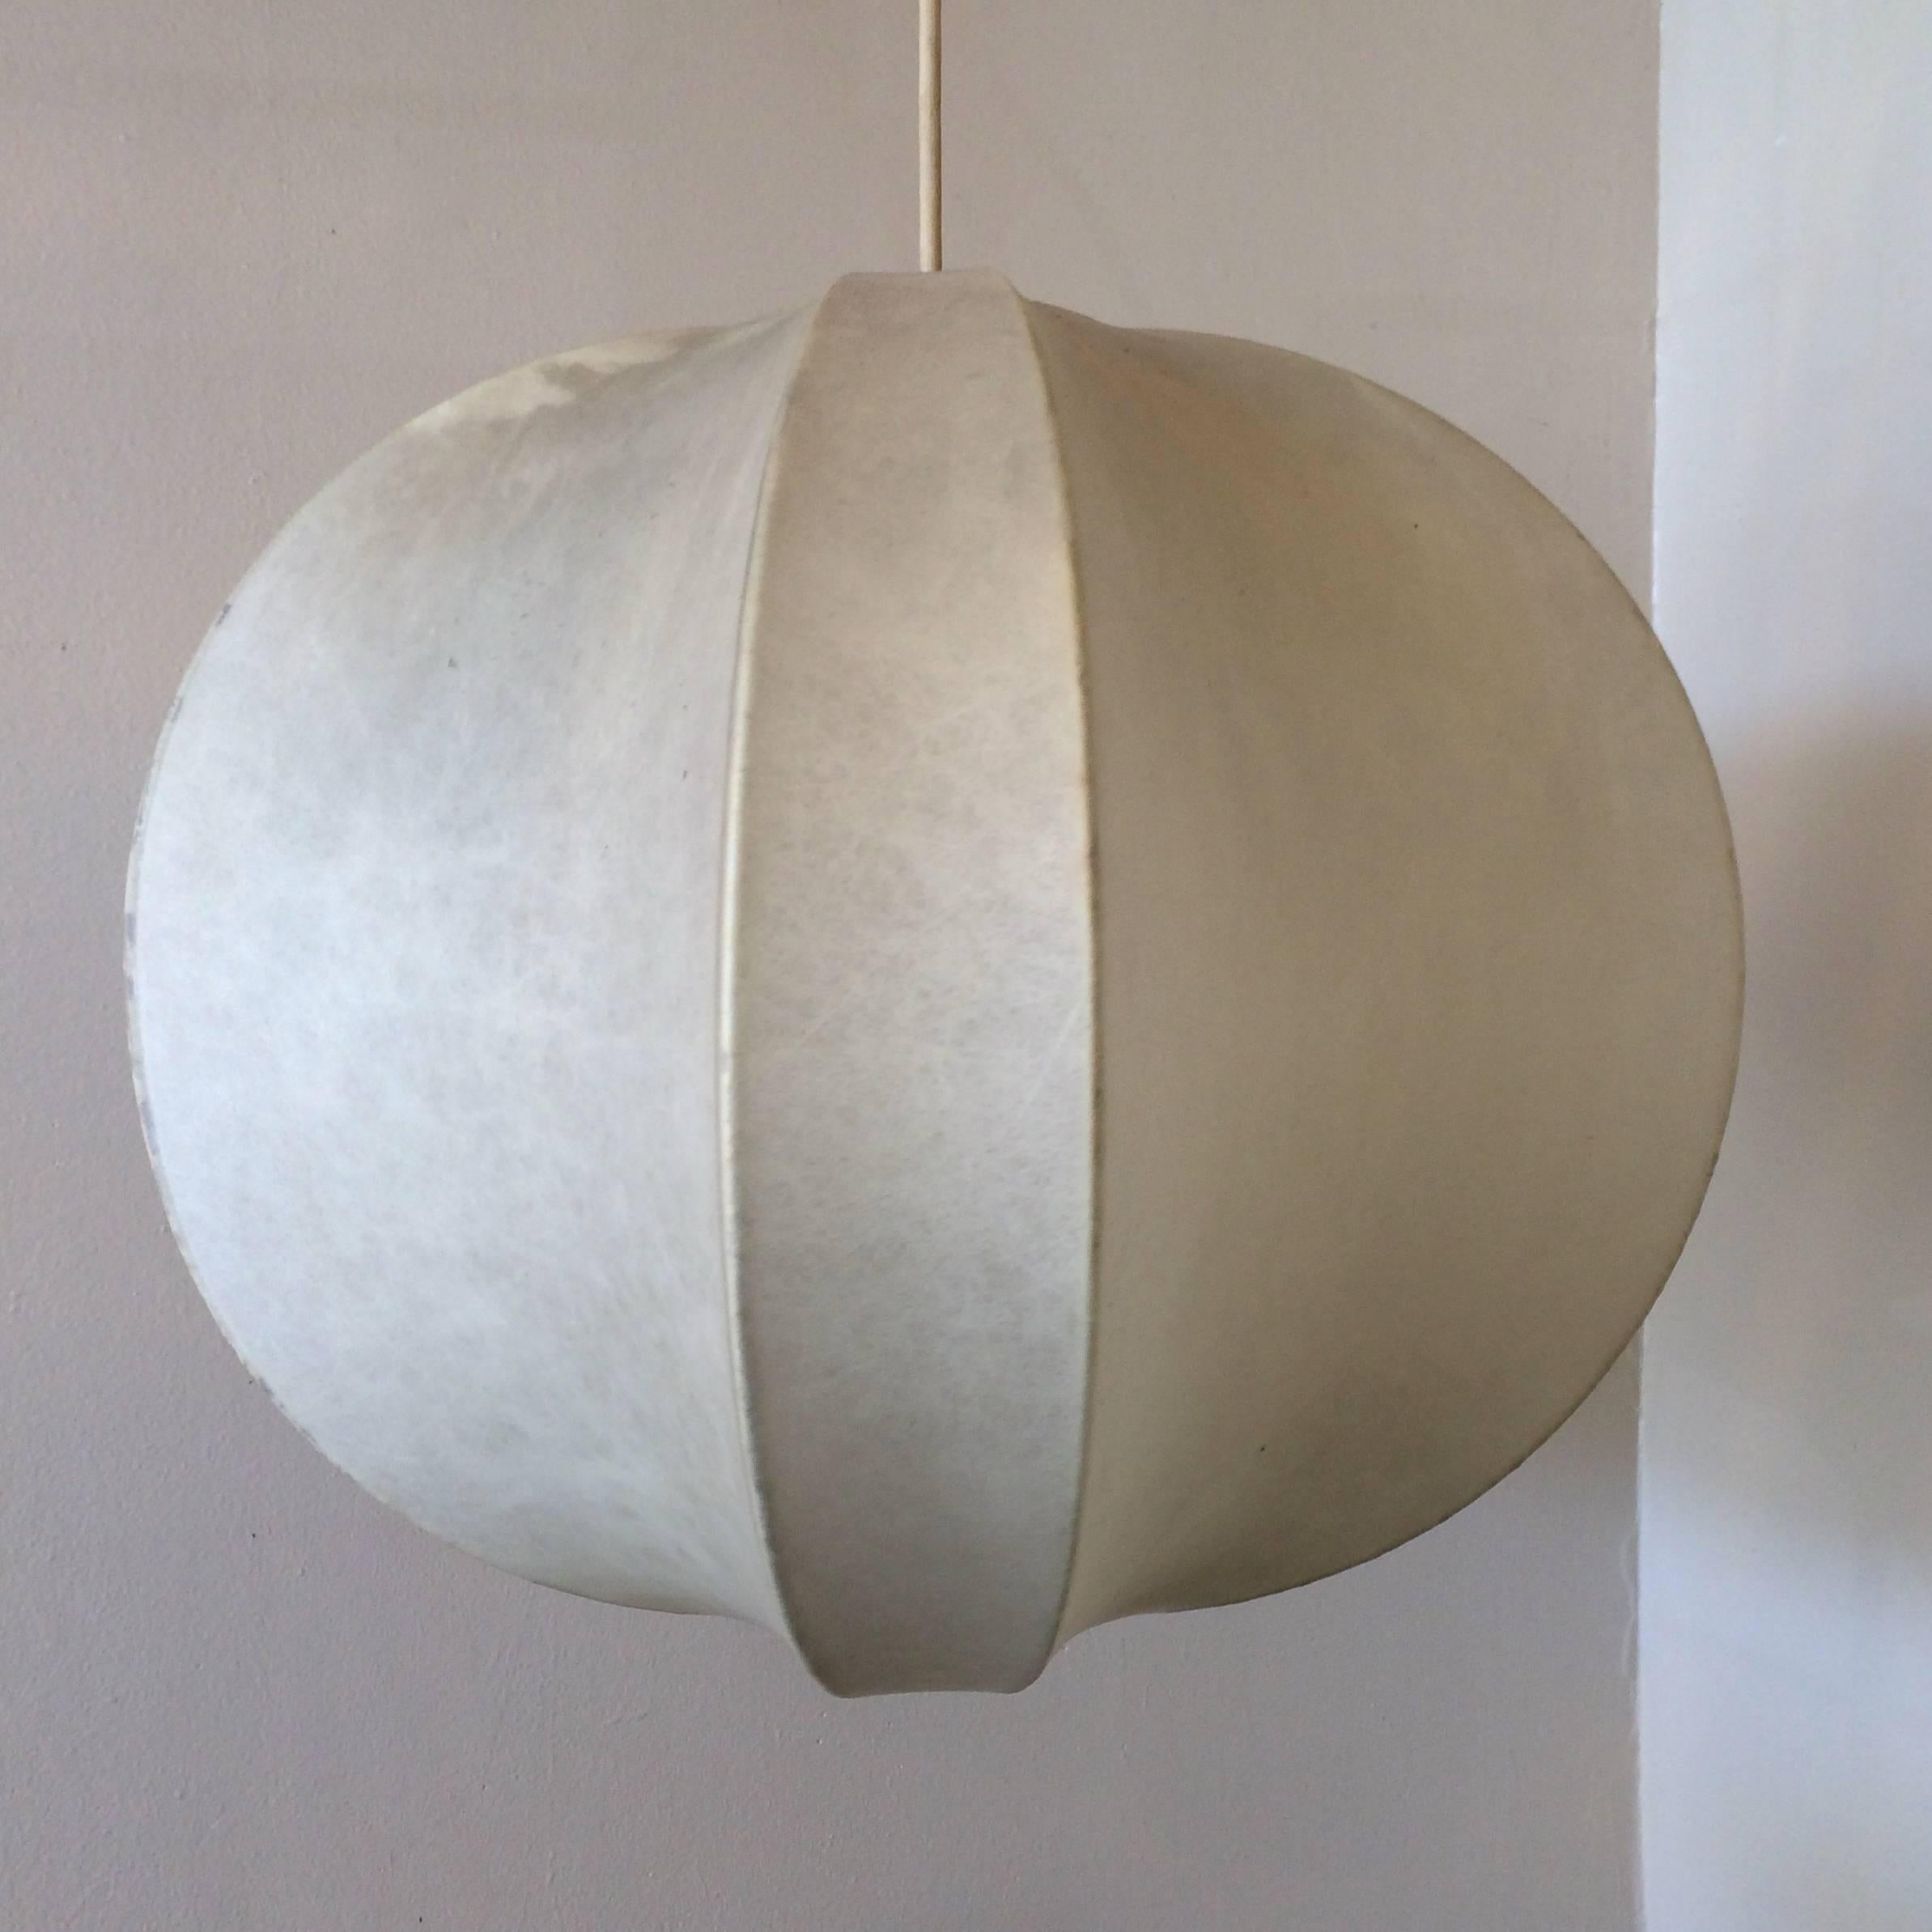 Other Italian Design Pendant Lamp Castiglioni Cocoon Style, 1960s